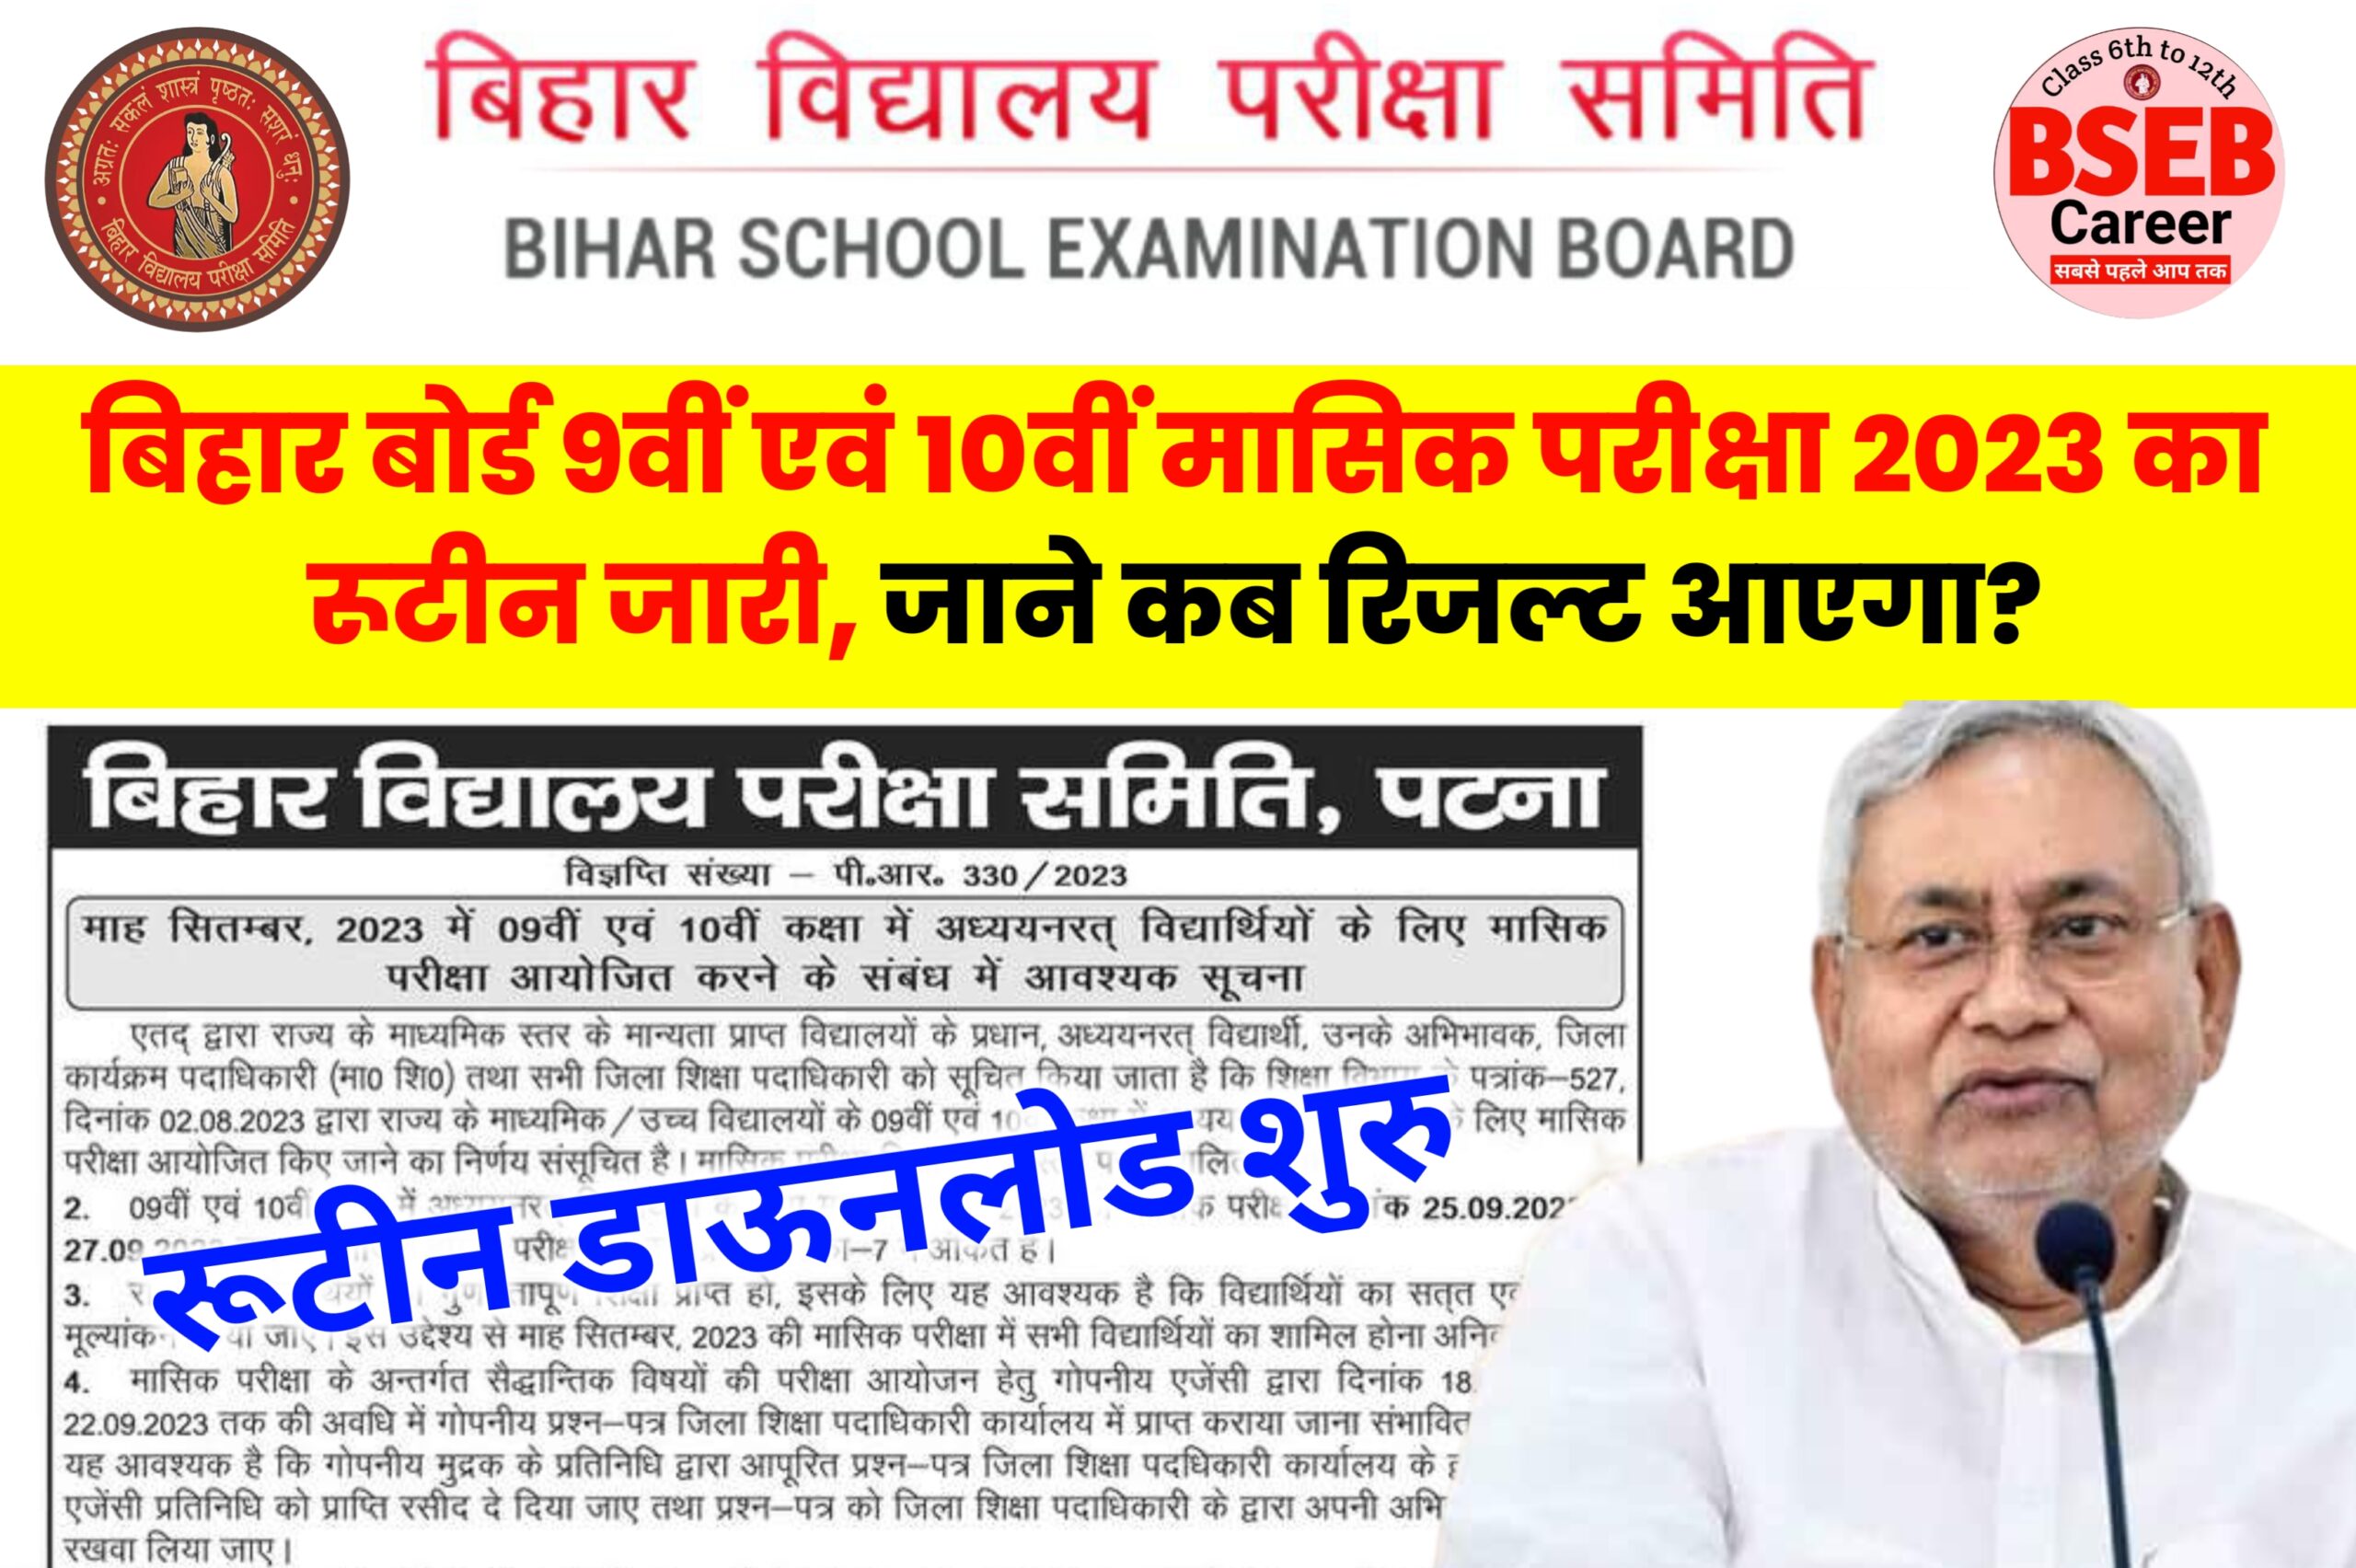 Bihar Board Class 9th 10th Monthly Exam 2023 : बिहार बोर्ड 9वीं एवं 10वीं मासिक (सितंबर) परीक्षा 2023 का रूटीन जारी, जाने कब रिजल्ट आएगा?